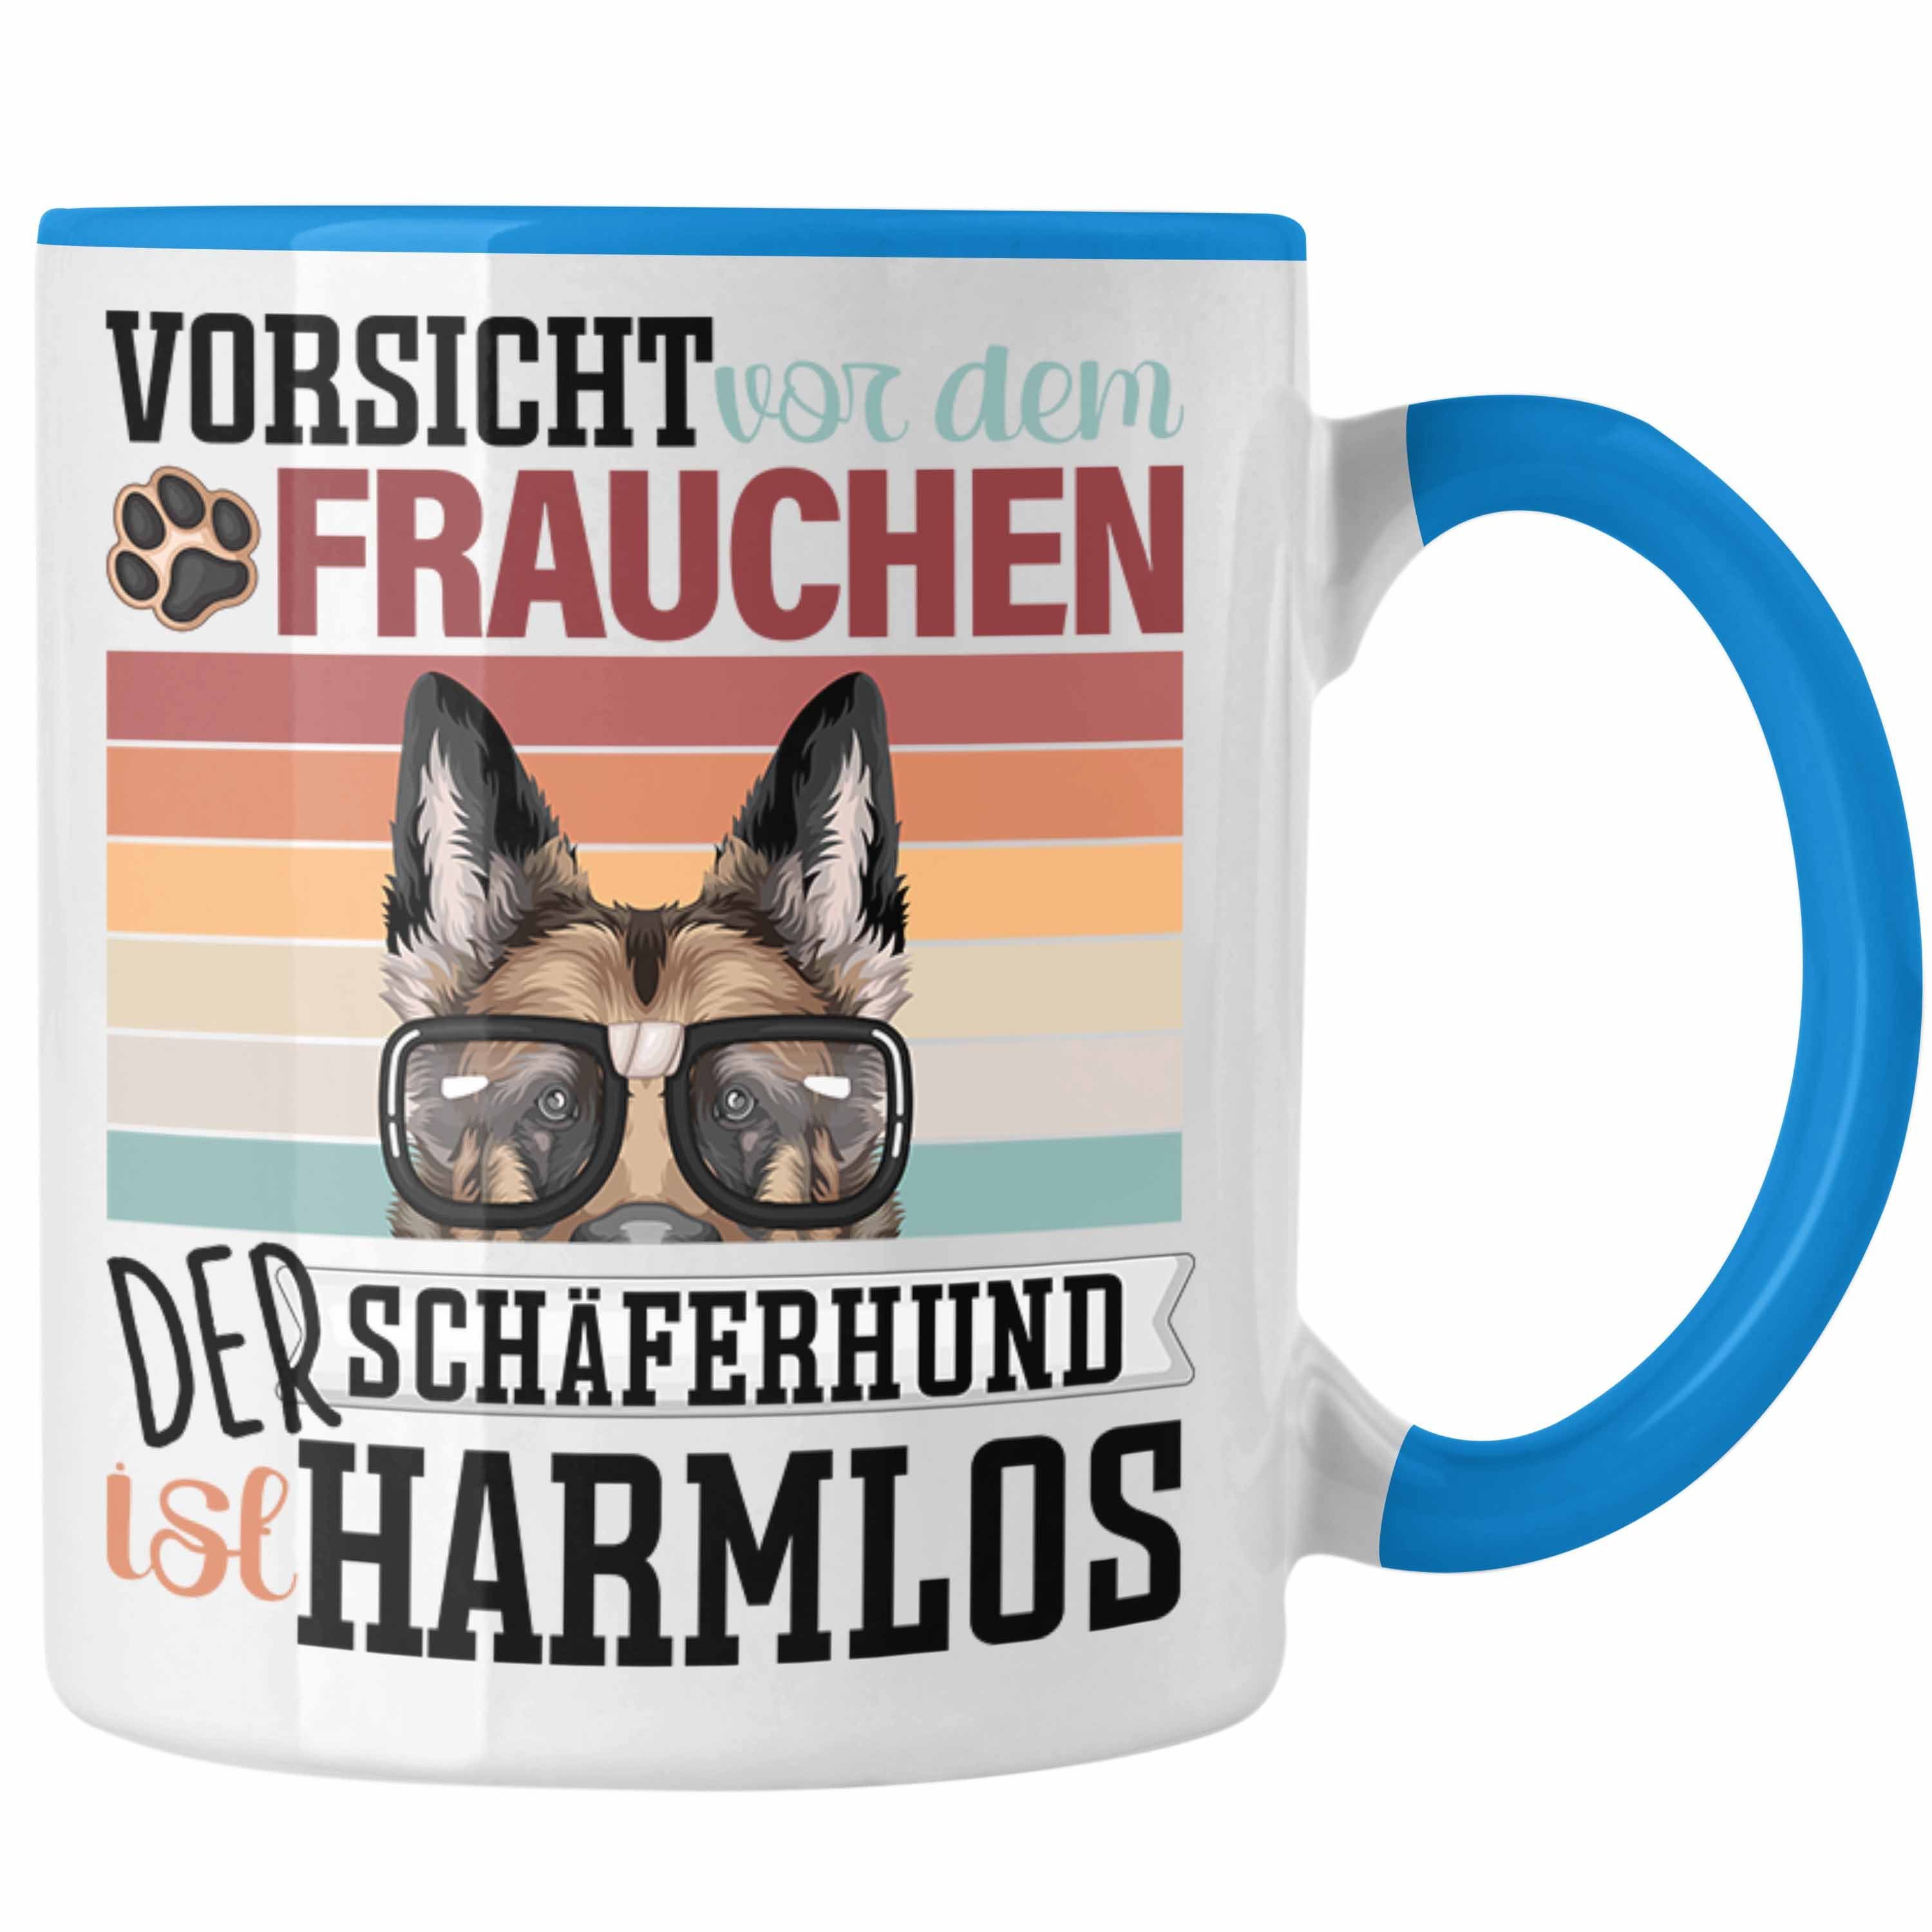 Trendation Tasse Lustiger Besitzerin Spruch Tasse Geschenk Frauchen Blau Geschen Schäferhund